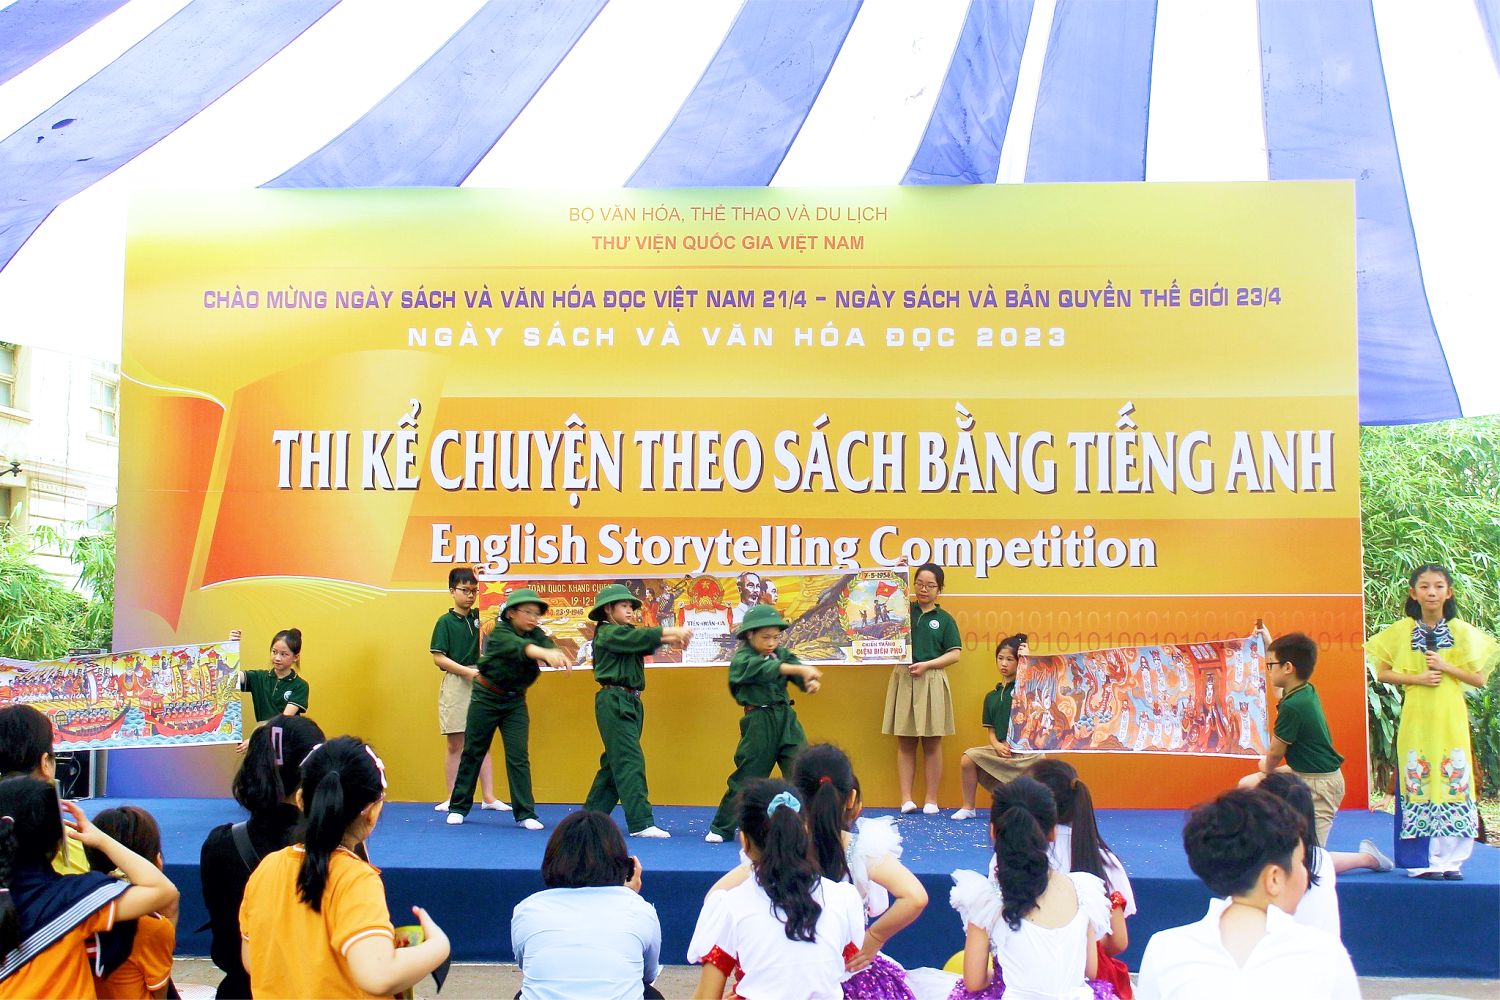 Tưng bừng nhiều hoạt động thu hút đông đảo các bạn trẻ trong ngày Sách và Văn hoá đọc Việt Nam - Ảnh 7.